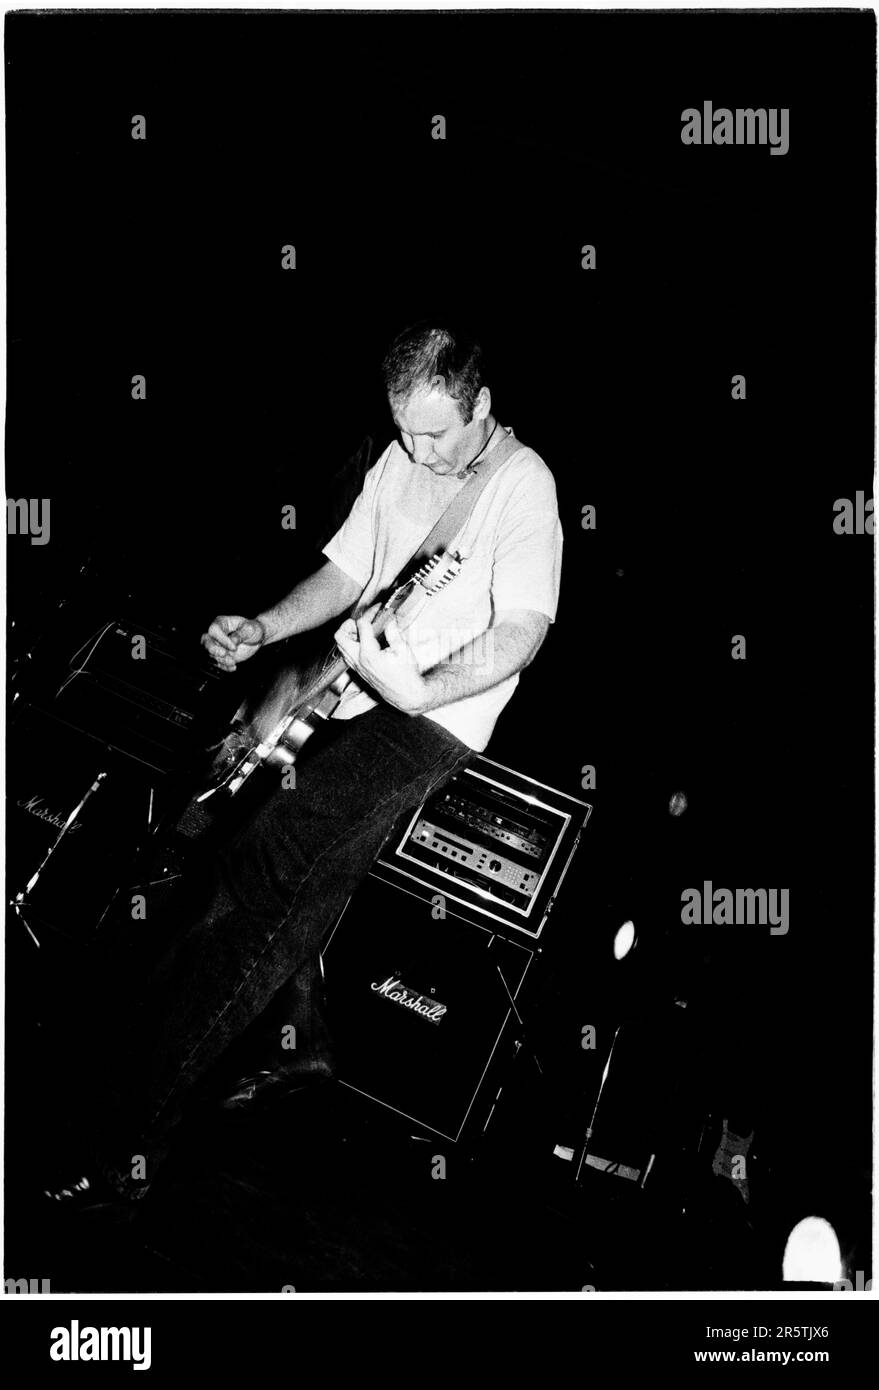 BOB MOULD, SUGAR, COPPER BLUE TOUR, 1992: Bob Mould von der legendären Grunge-Band Sugar auf ihrer Copper Blue Tour an der Cardiff University am 17. Dezember 1992. Foto: Rob Watkins. INFO: Sugar, eine 1992 in Athen, Georgia, von Bob Mould gegründete amerikanische Alternative-Rock-Band, erlangte Anerkennung für ihre Mischung aus Punkenergie und melodischen Hooks. Hits wie „If I Can't Change Your Mind“ und „Helpless“ festigten ihren Status als Indie-Rock-Ikonen der 90er Jahre. Stockfoto